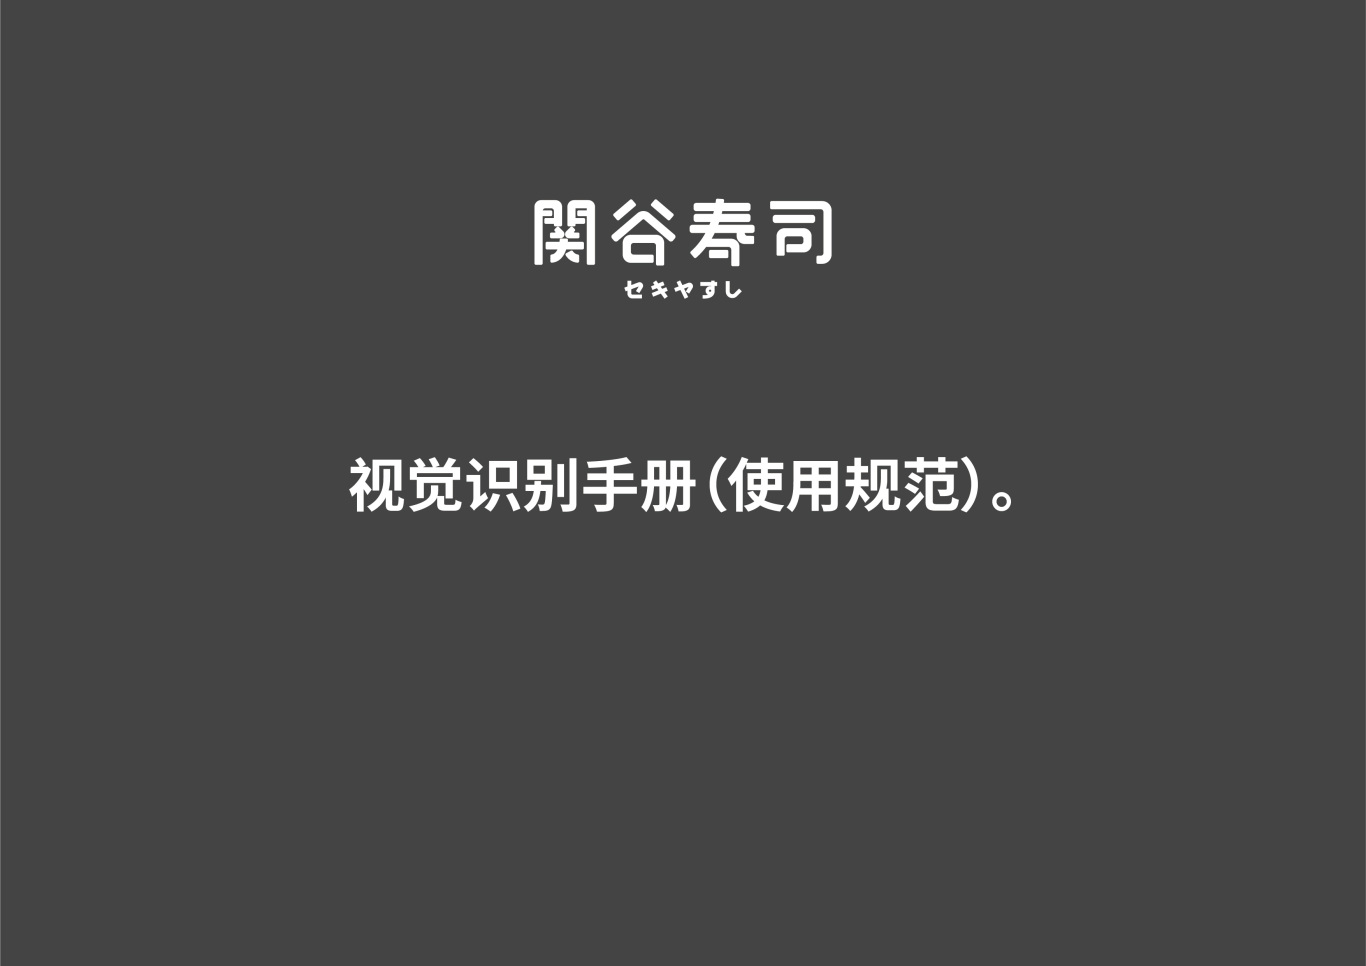 关谷寿司-福州经典寿司品牌图34